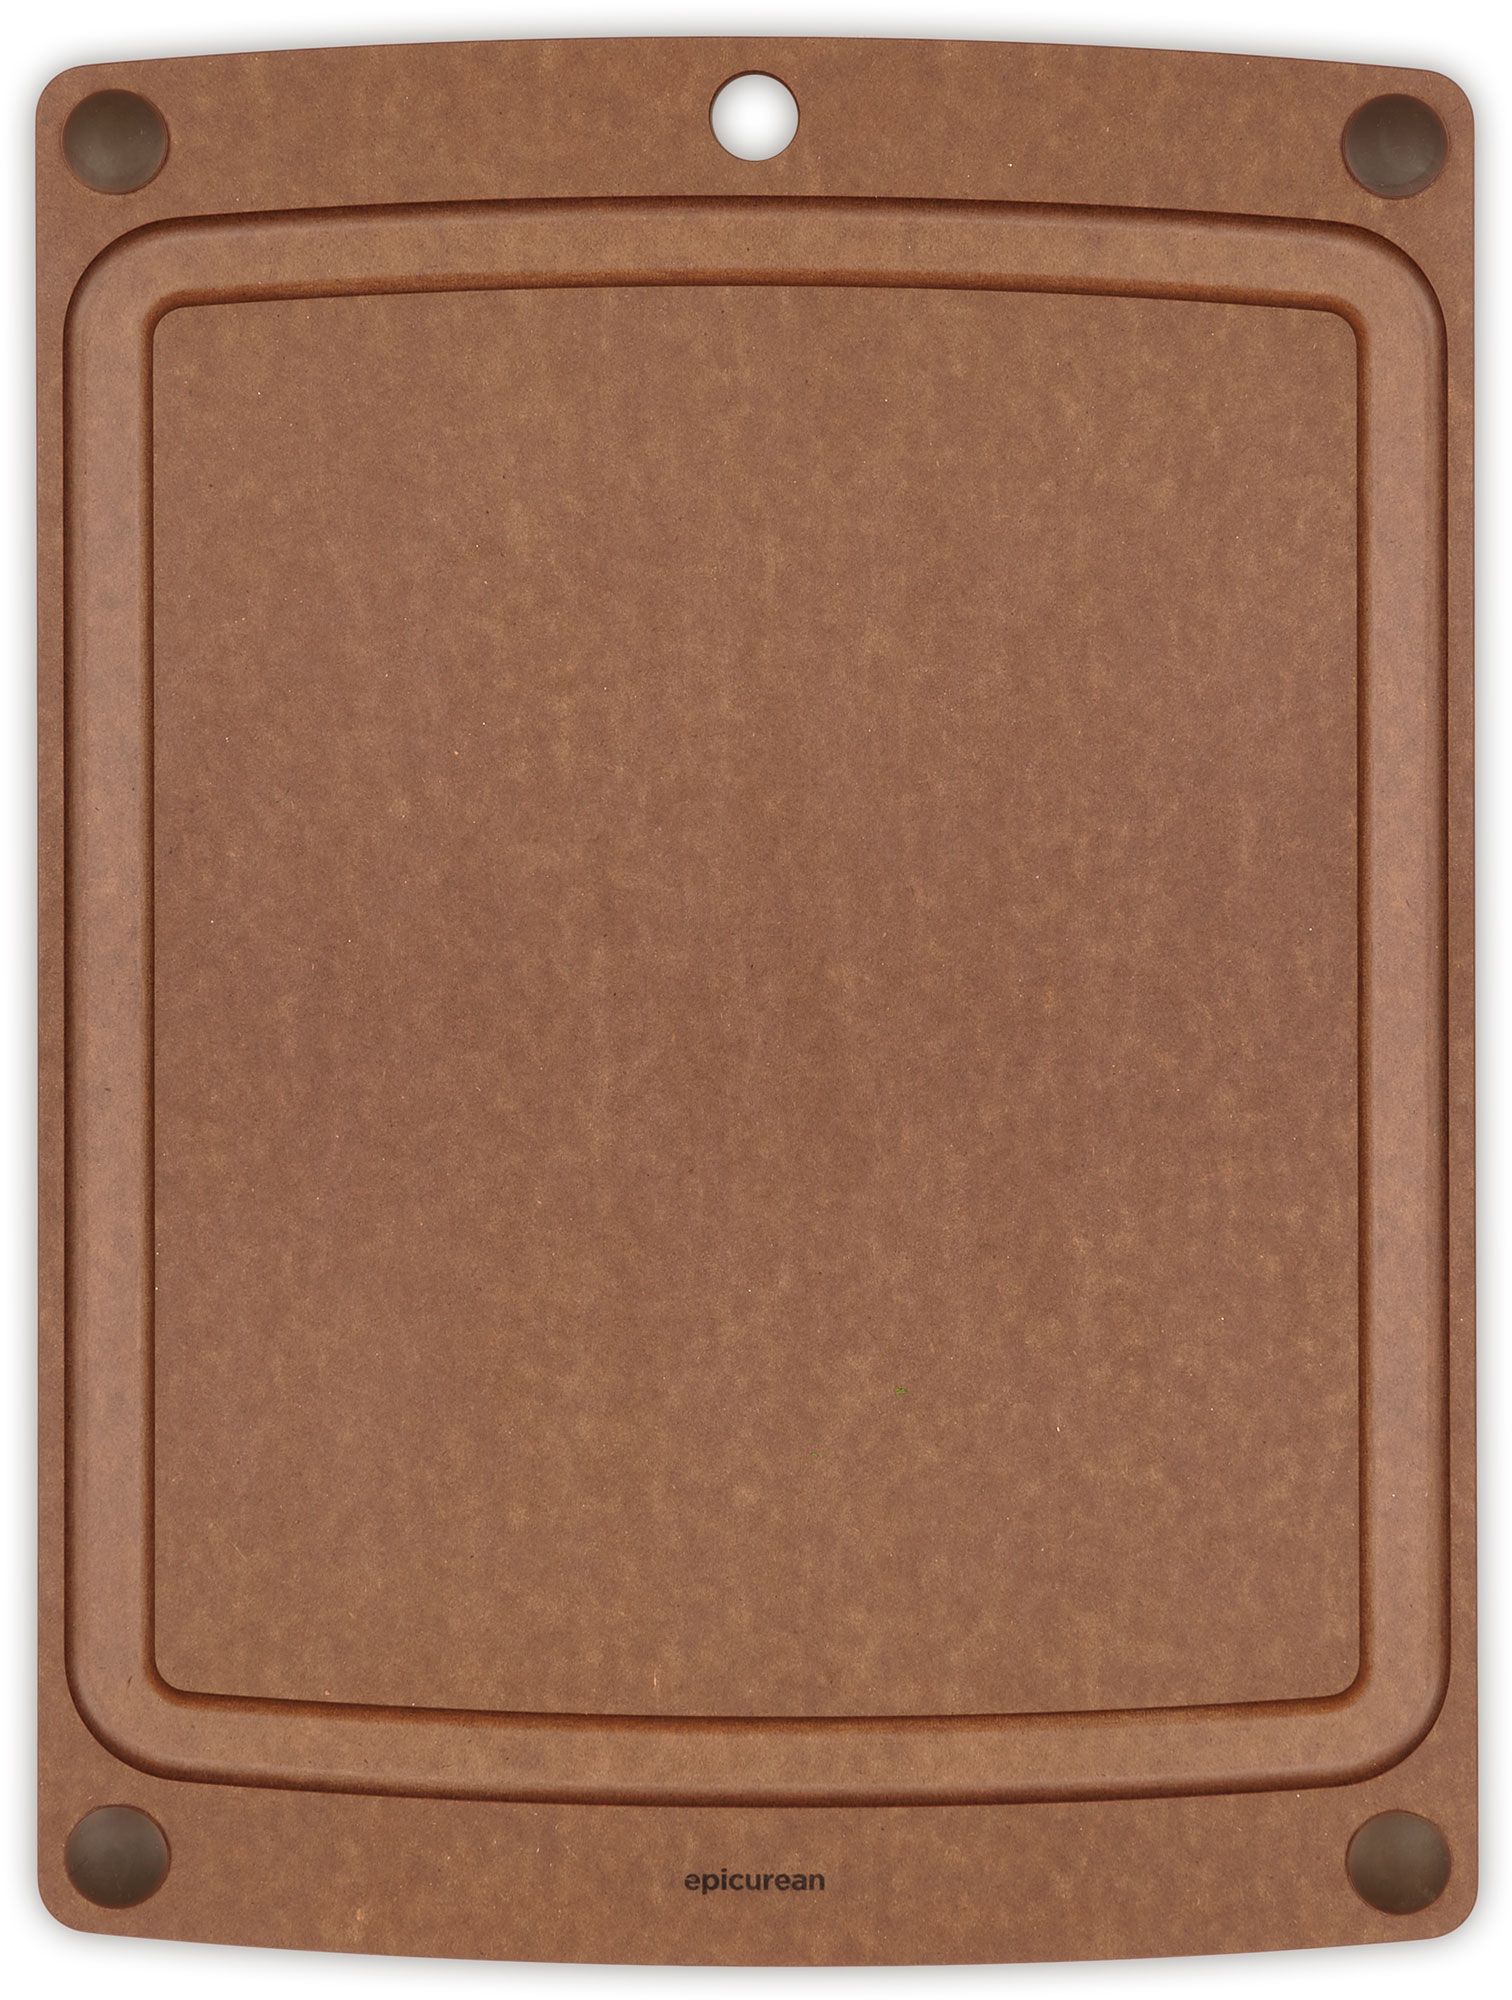 Custom Eco-Friendly Richlite Cutting Board - 13 3/4 x 9 3/4